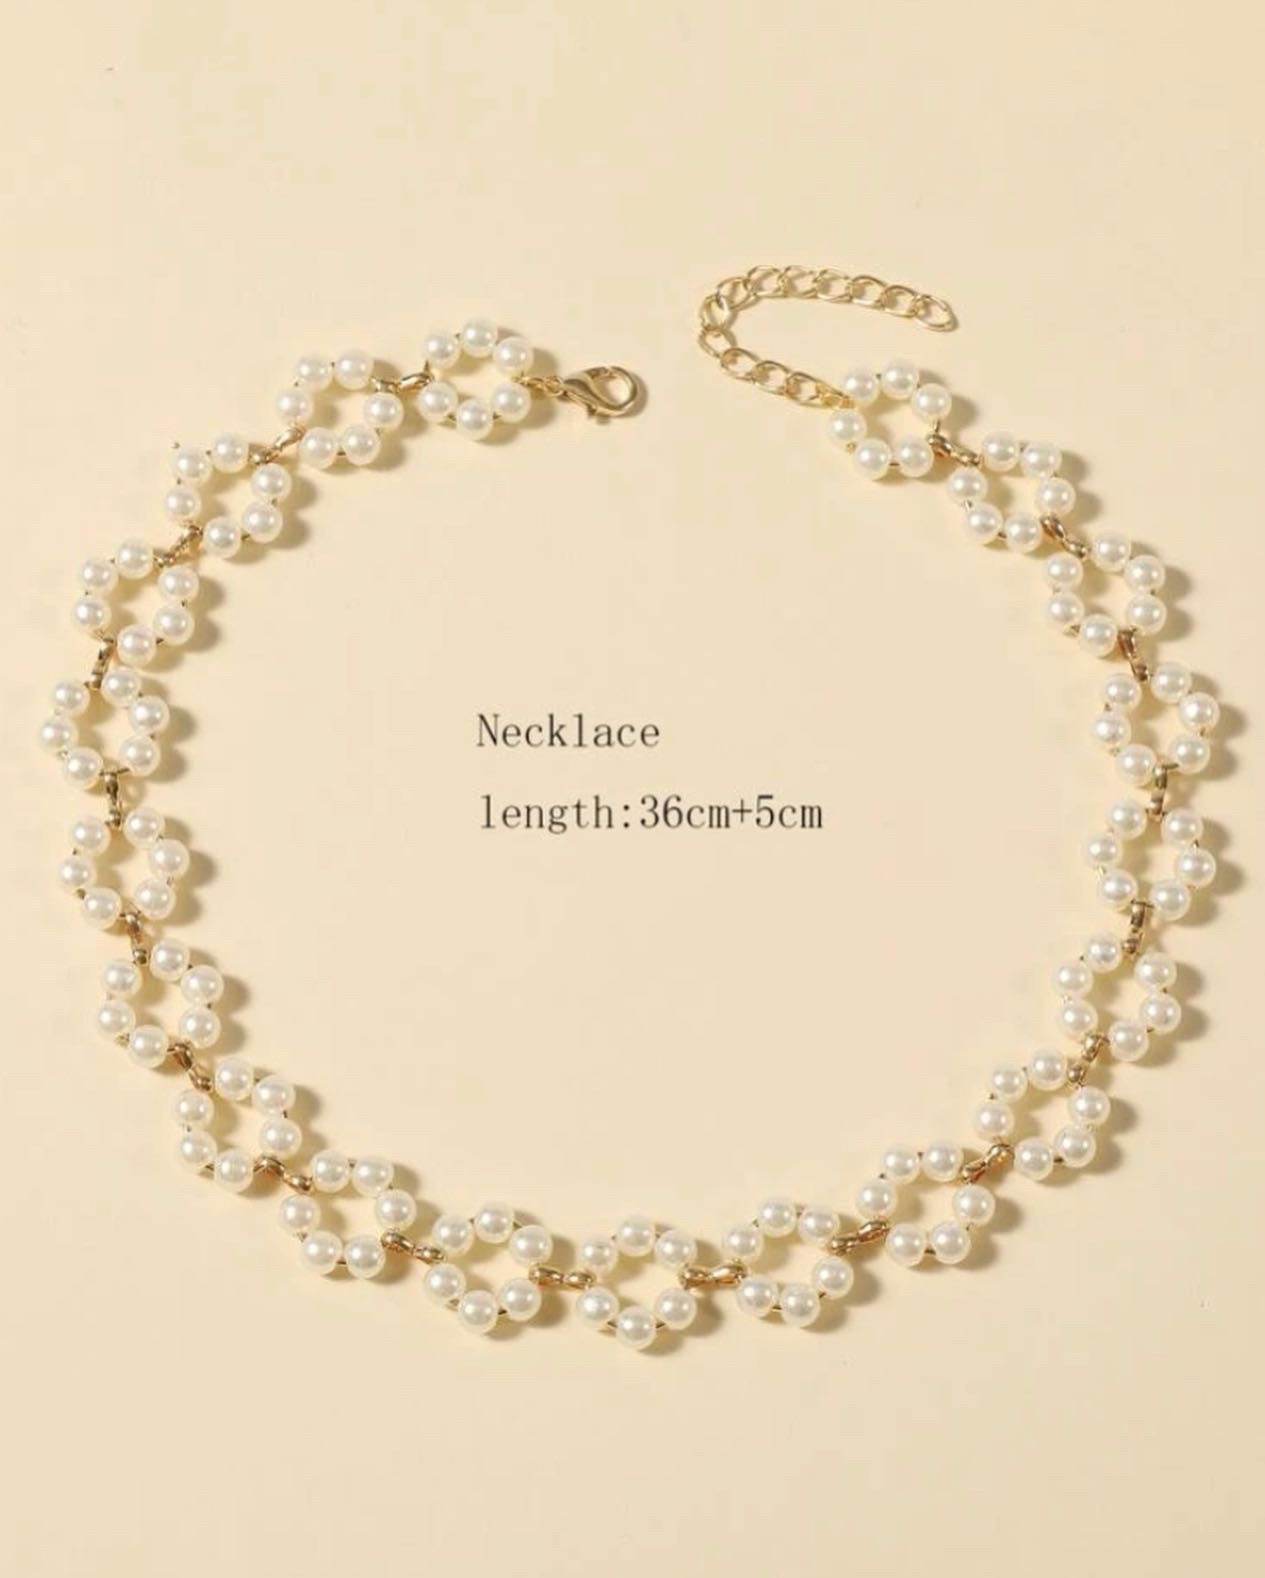 Handmade flower 🌸 necklace for women